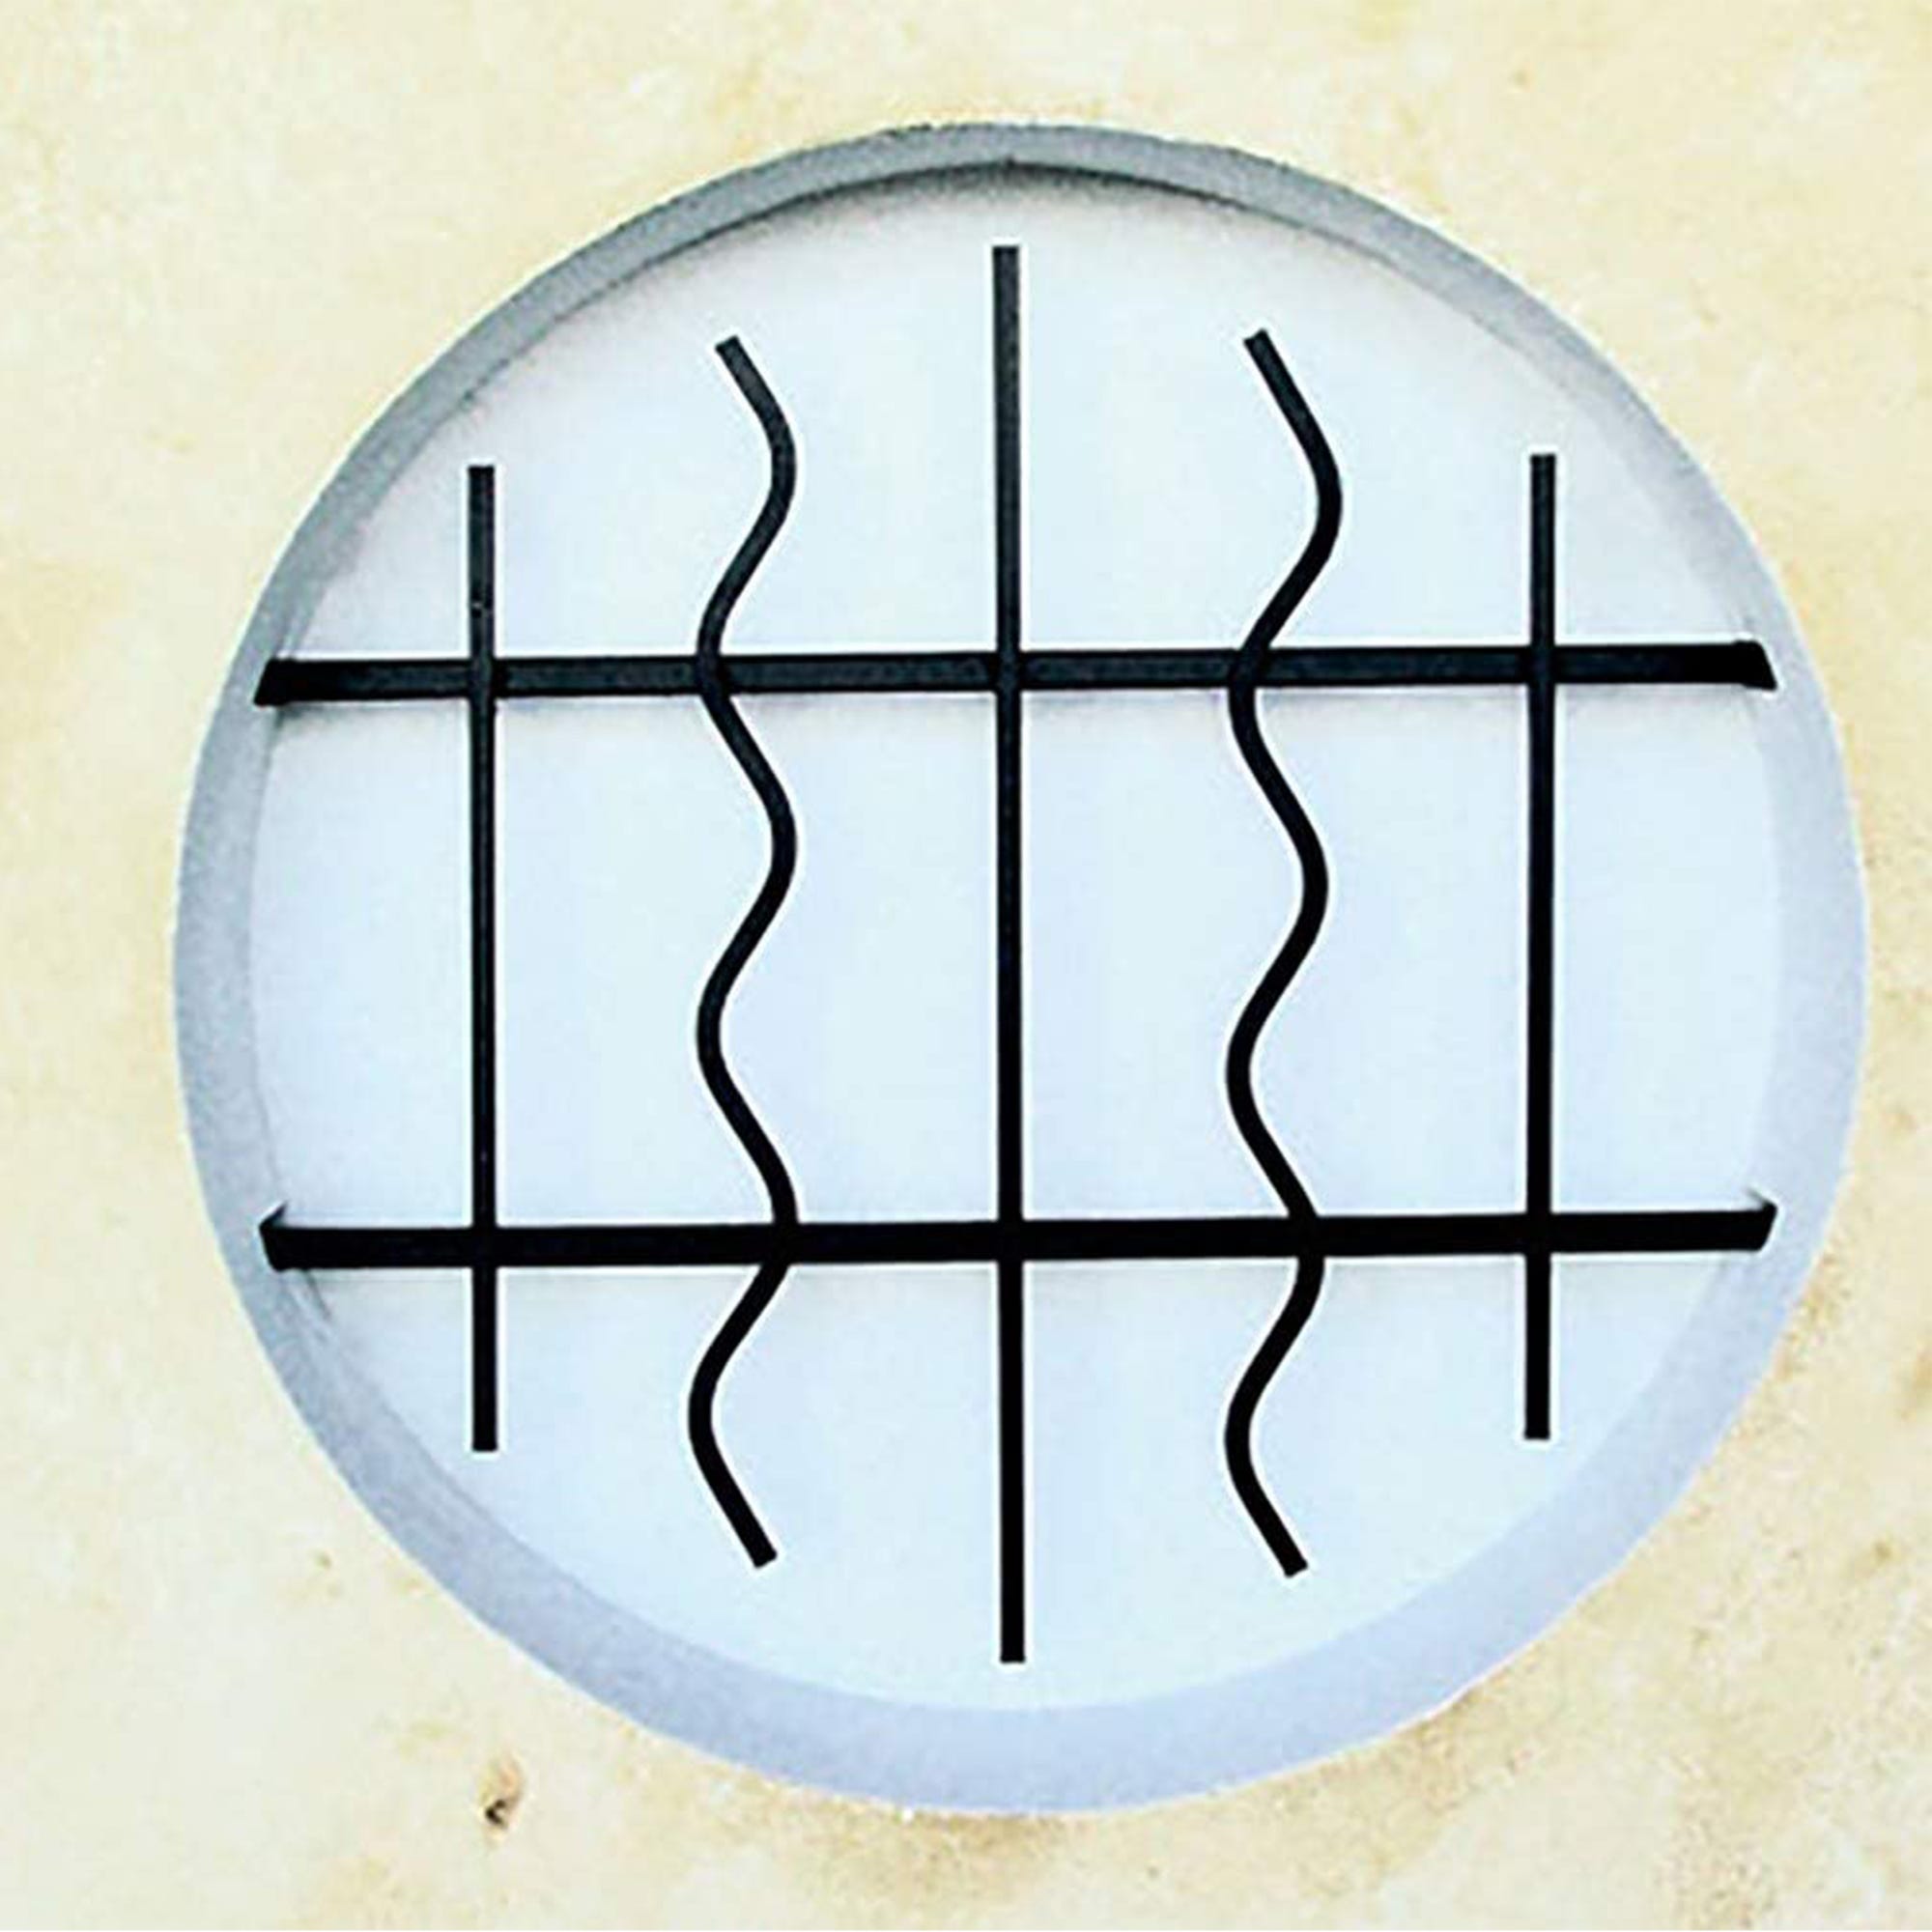 Grille de Defense Azur diametre 60 cm pour Fenetre ronde (côte tableau) 0